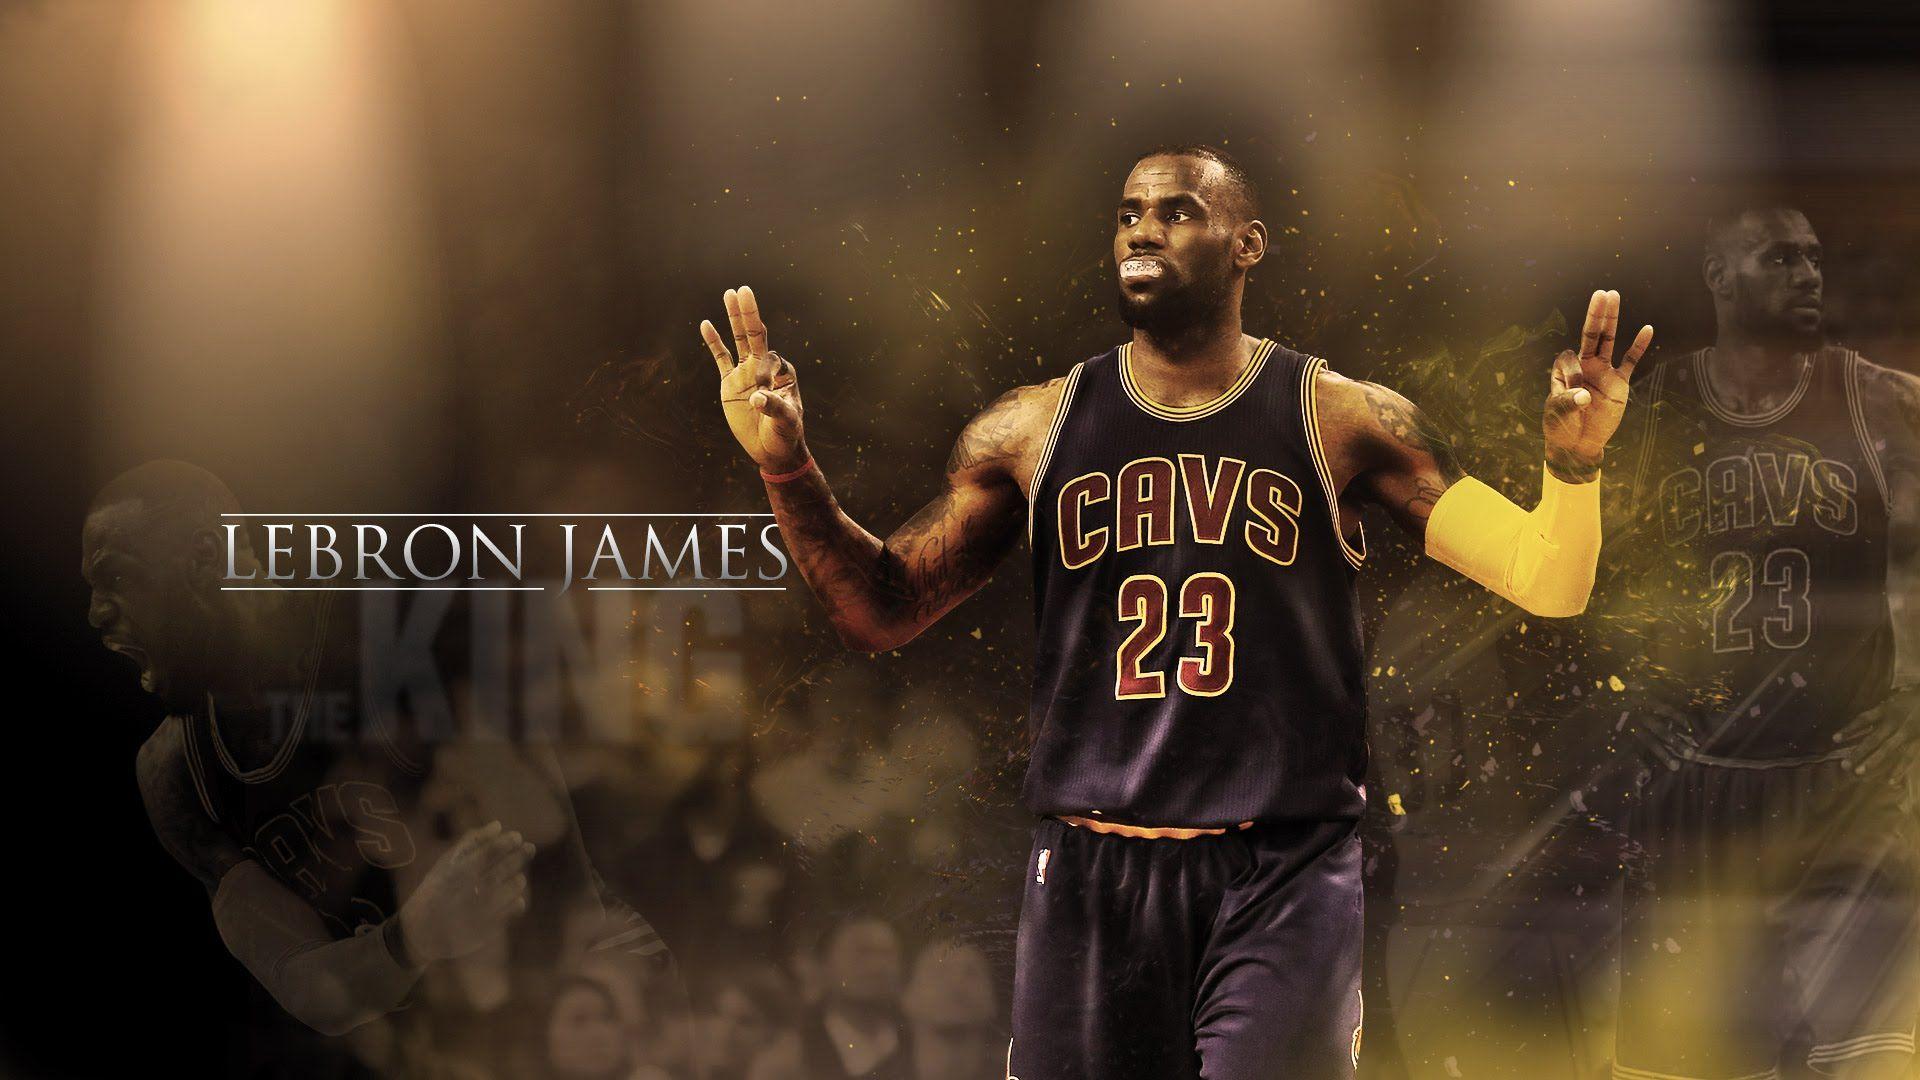 LeBron James MVP 2016. King Kong [HD]